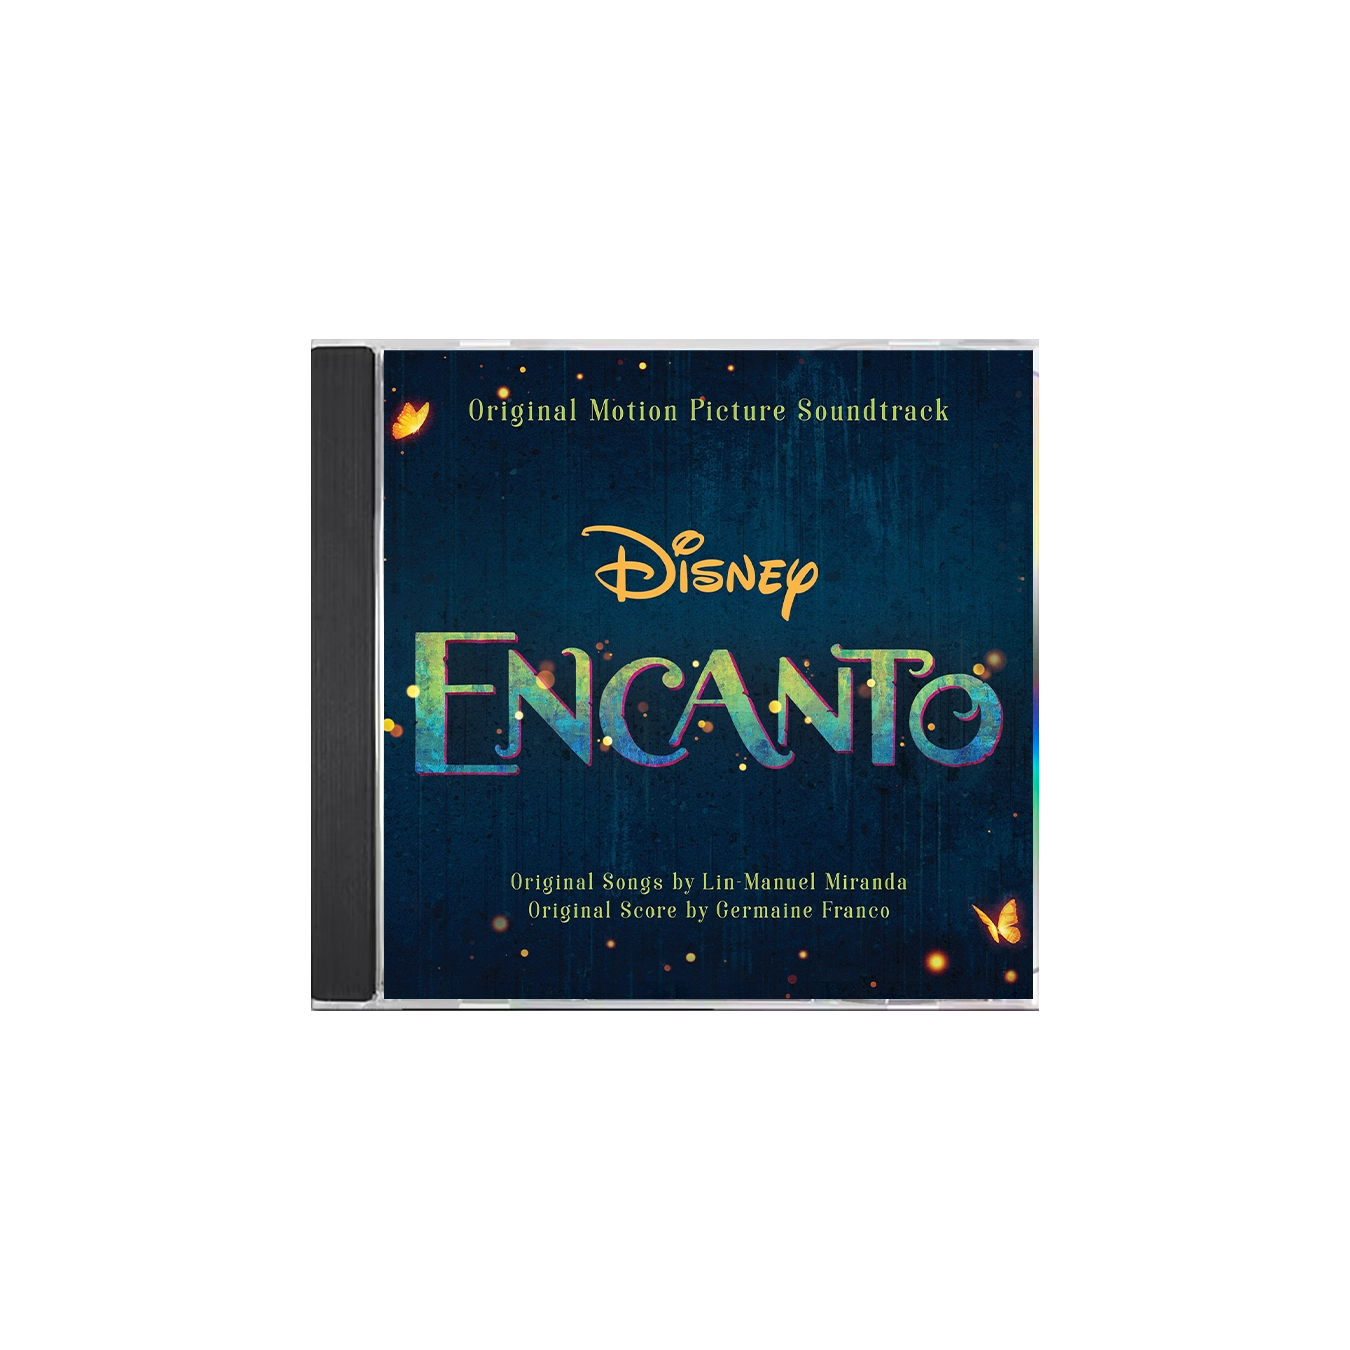 Encanto (Original Motion Picture Soundtrack) - Album by Lin-Manuel